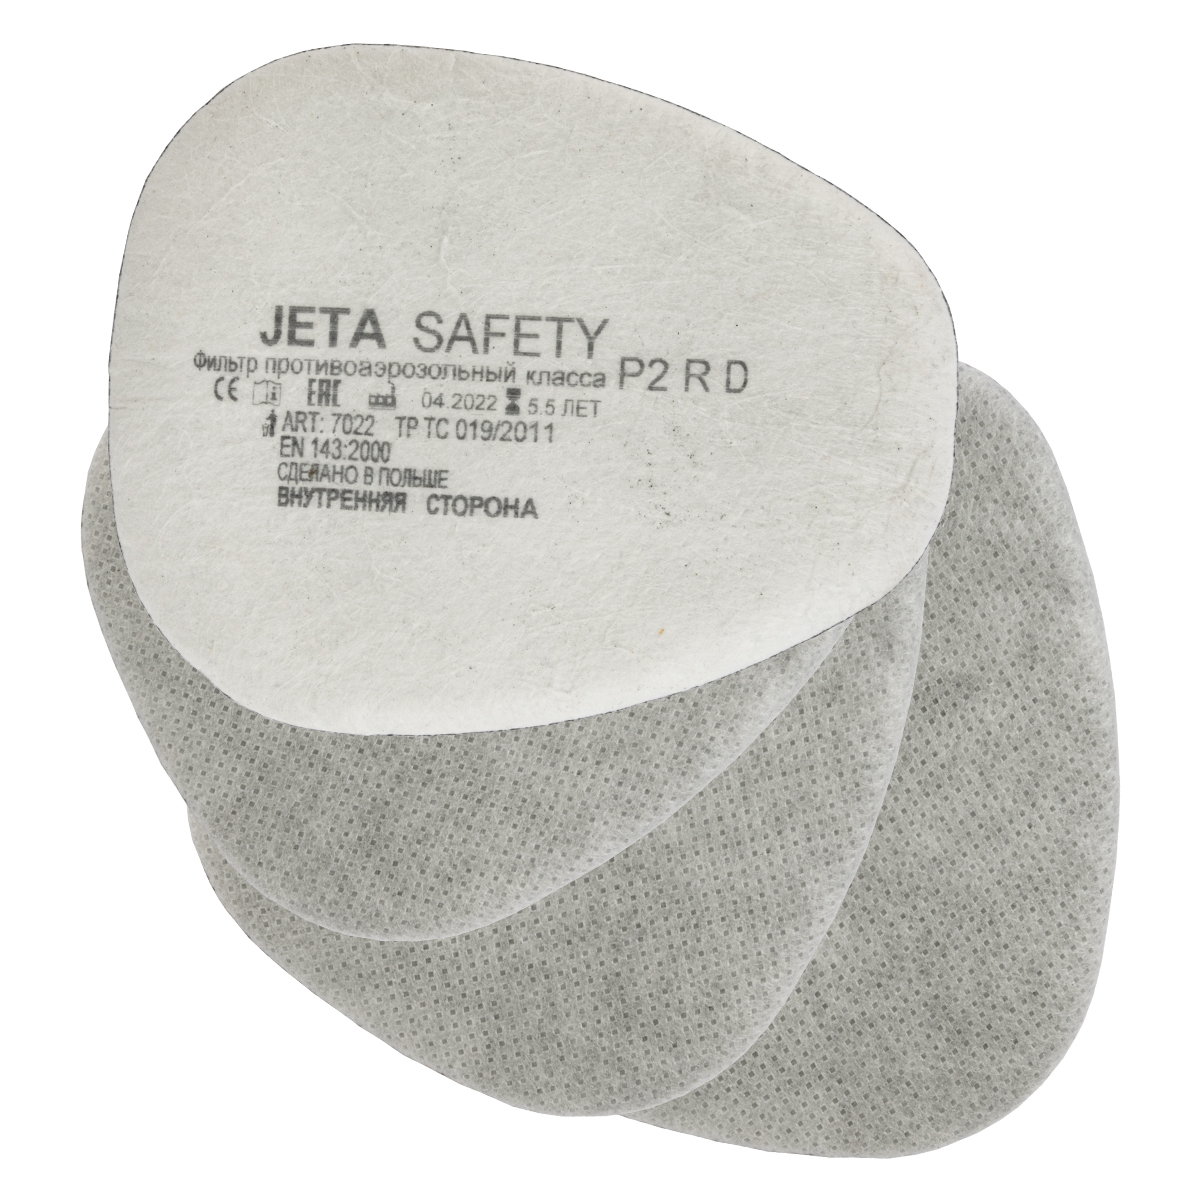 Предфильтры от пыли и аэрозолей с угольным слоем P2 R D (4 шт.) JETA SAFETY 7022